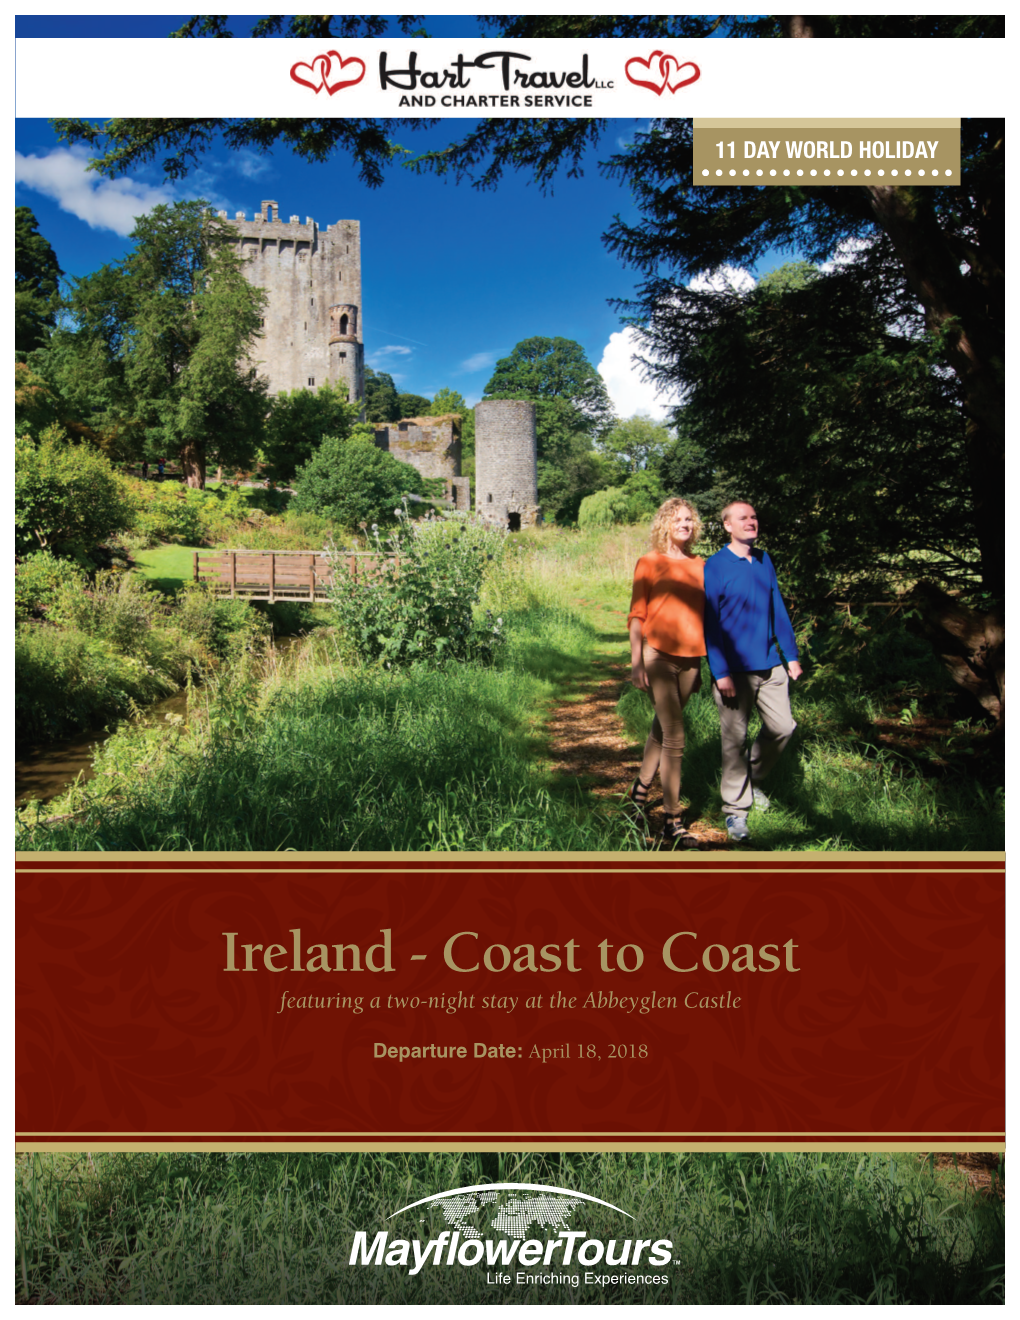 Ireland - Coast to Coast